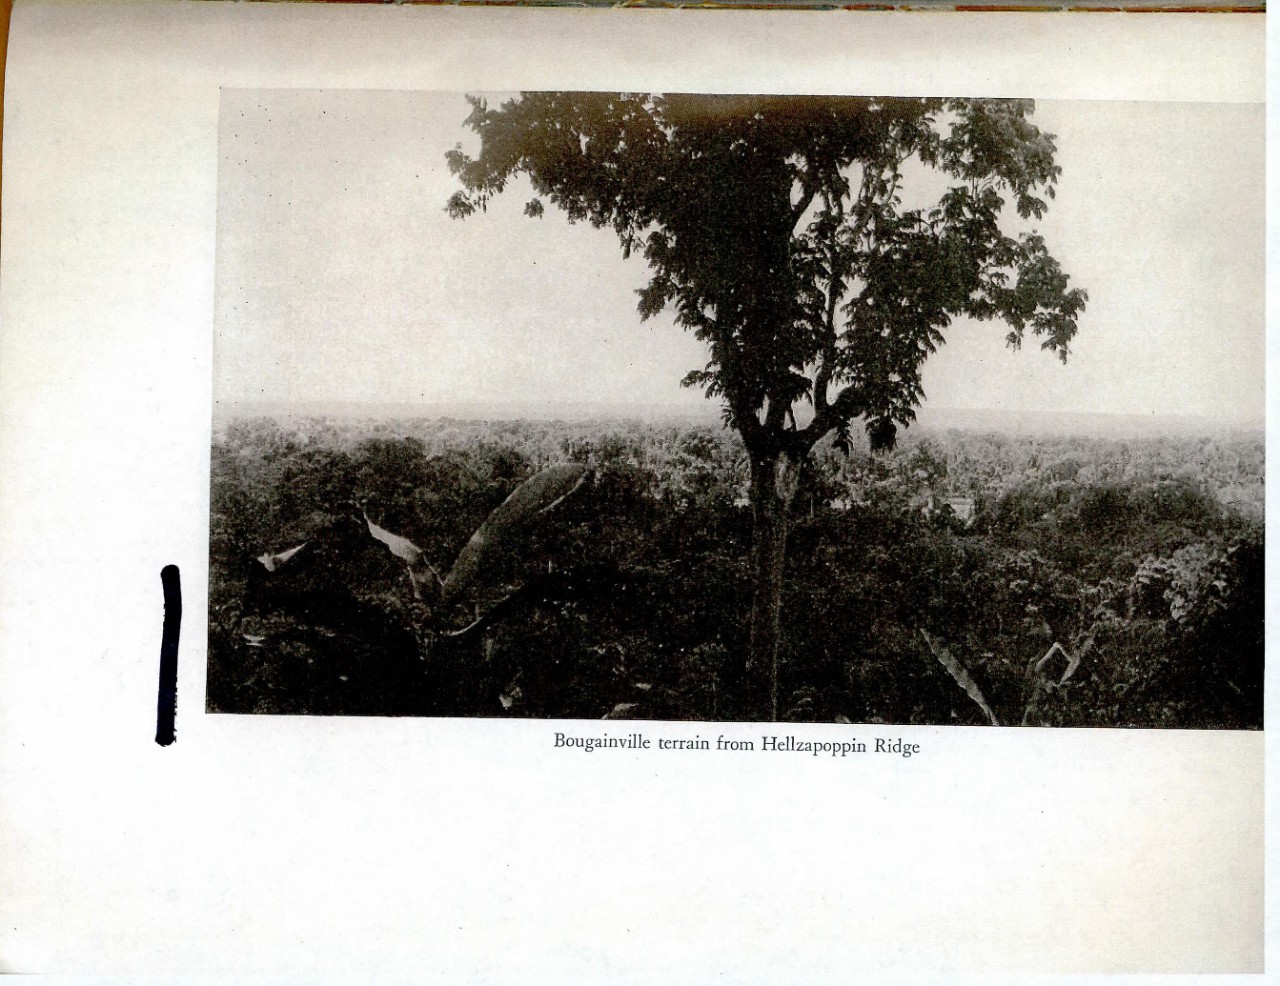 Bougainville terrain from Hellzapoppin Ridge